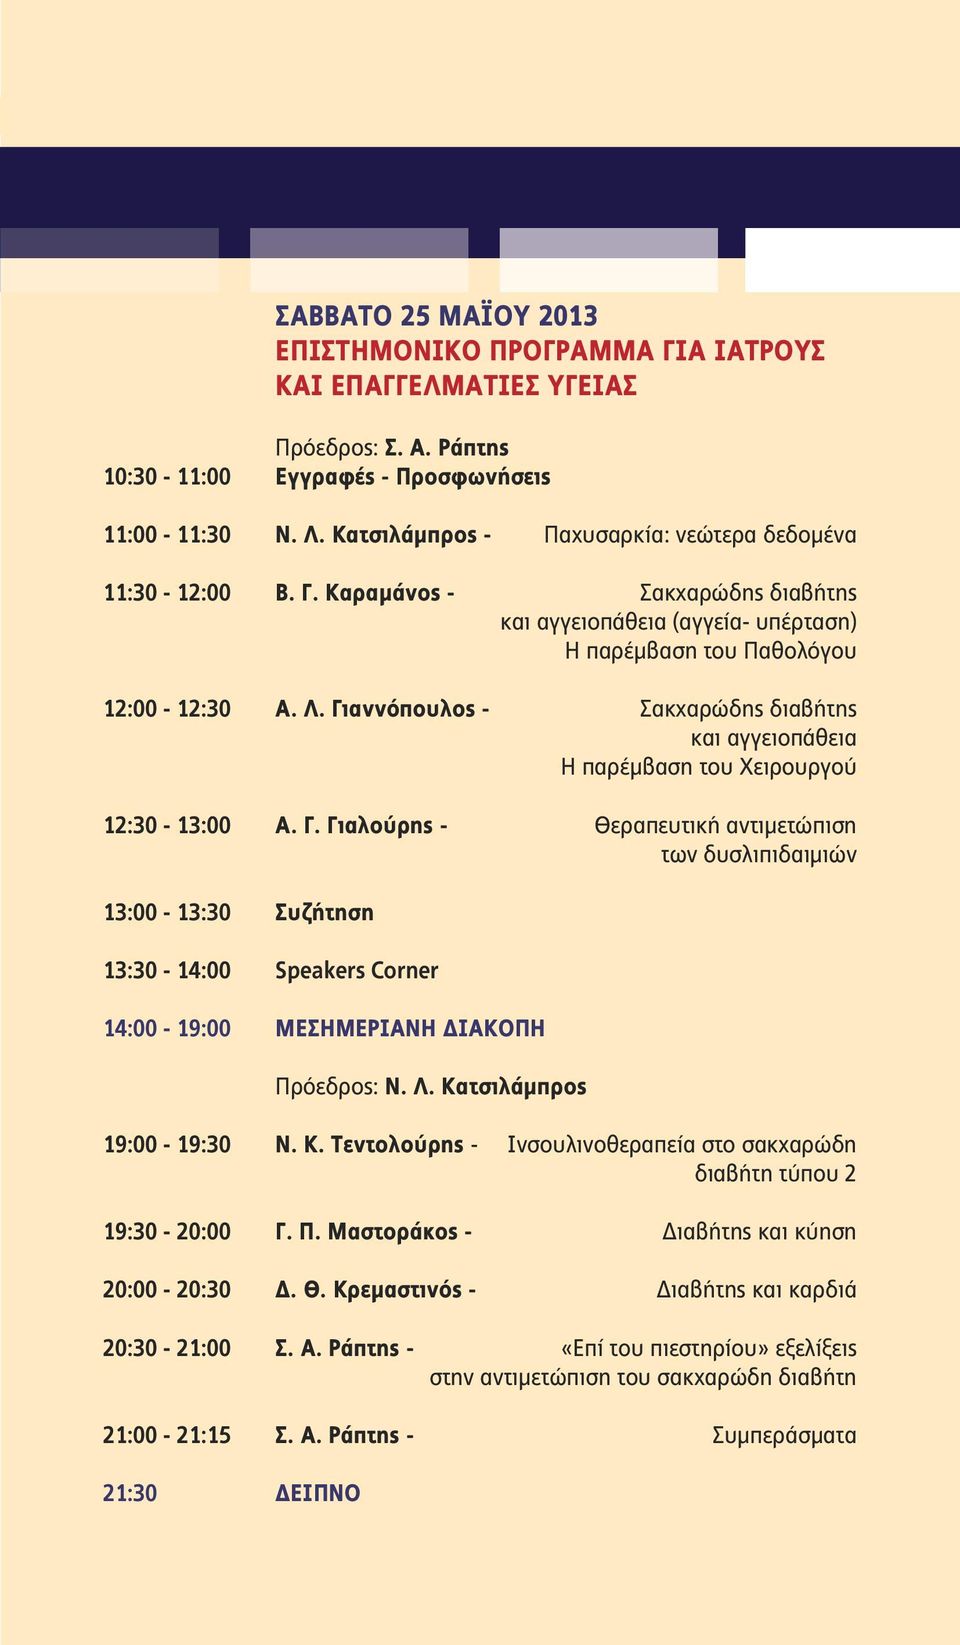 Γιαννόπουλος - Σακχαρώδης διαβήτης και αγγειοπάθεια Η παρέμβαση του Χειρουργού 12:30-13:00 Α. Γ.